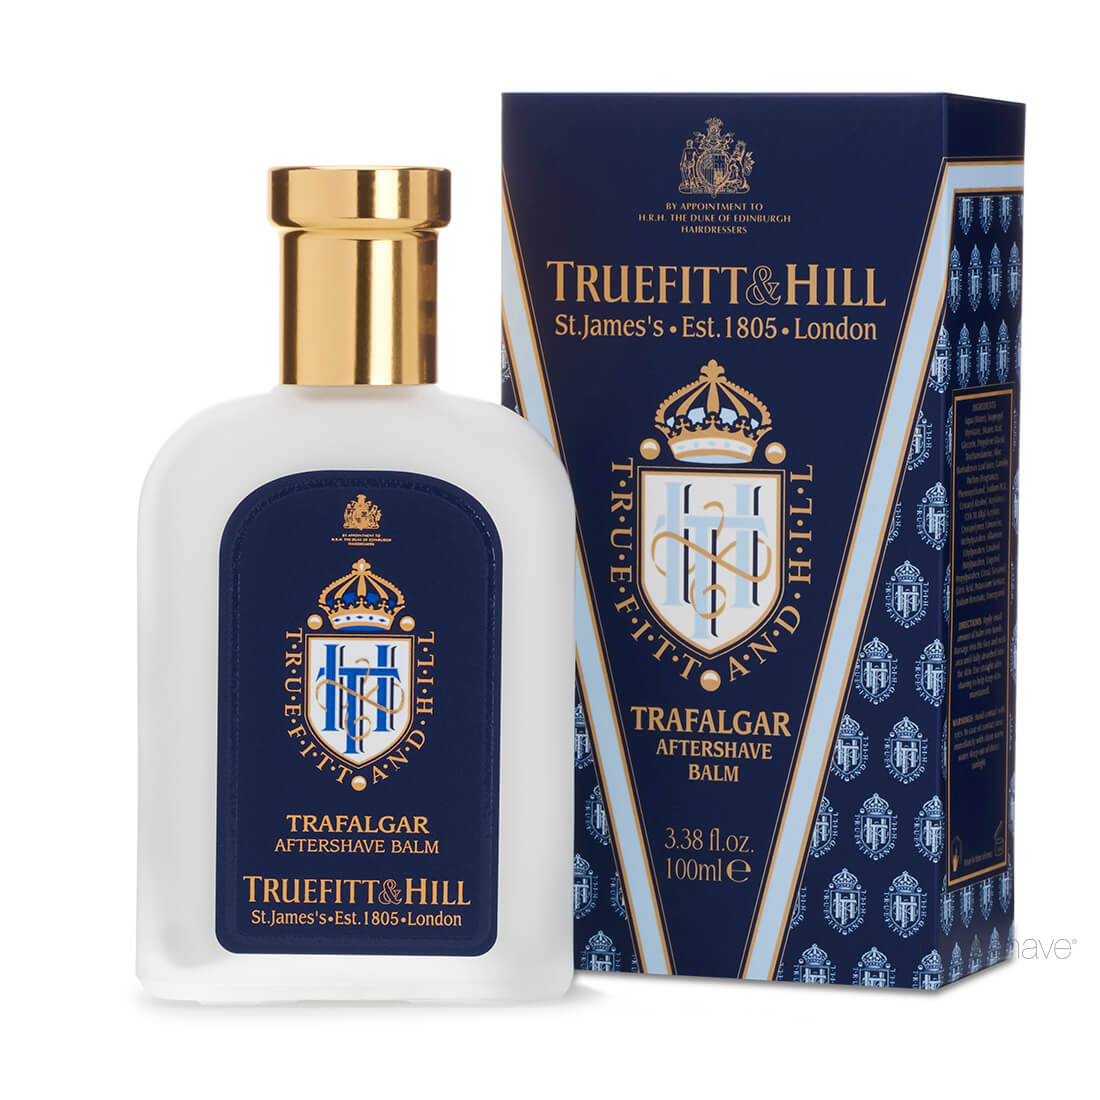 Truefitt & Hill Aftershave Balm, Trafalgar, 100 ml.